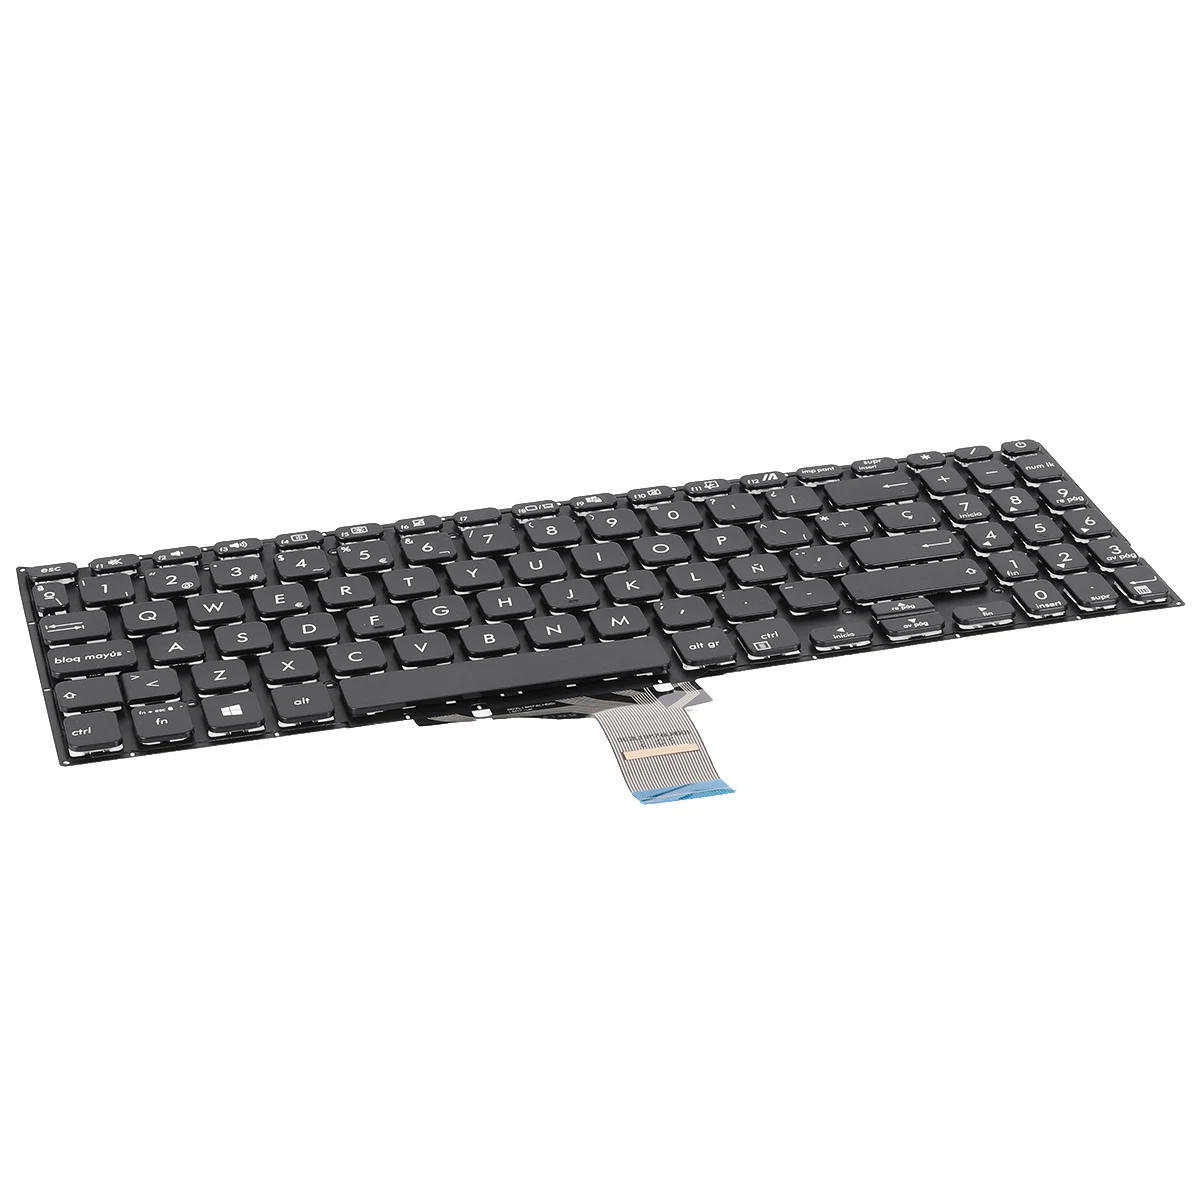 SP Laptop Keyboard for Asus X515 X515DA X515EA X515J X515JA X515UA X515MA Black without Foil